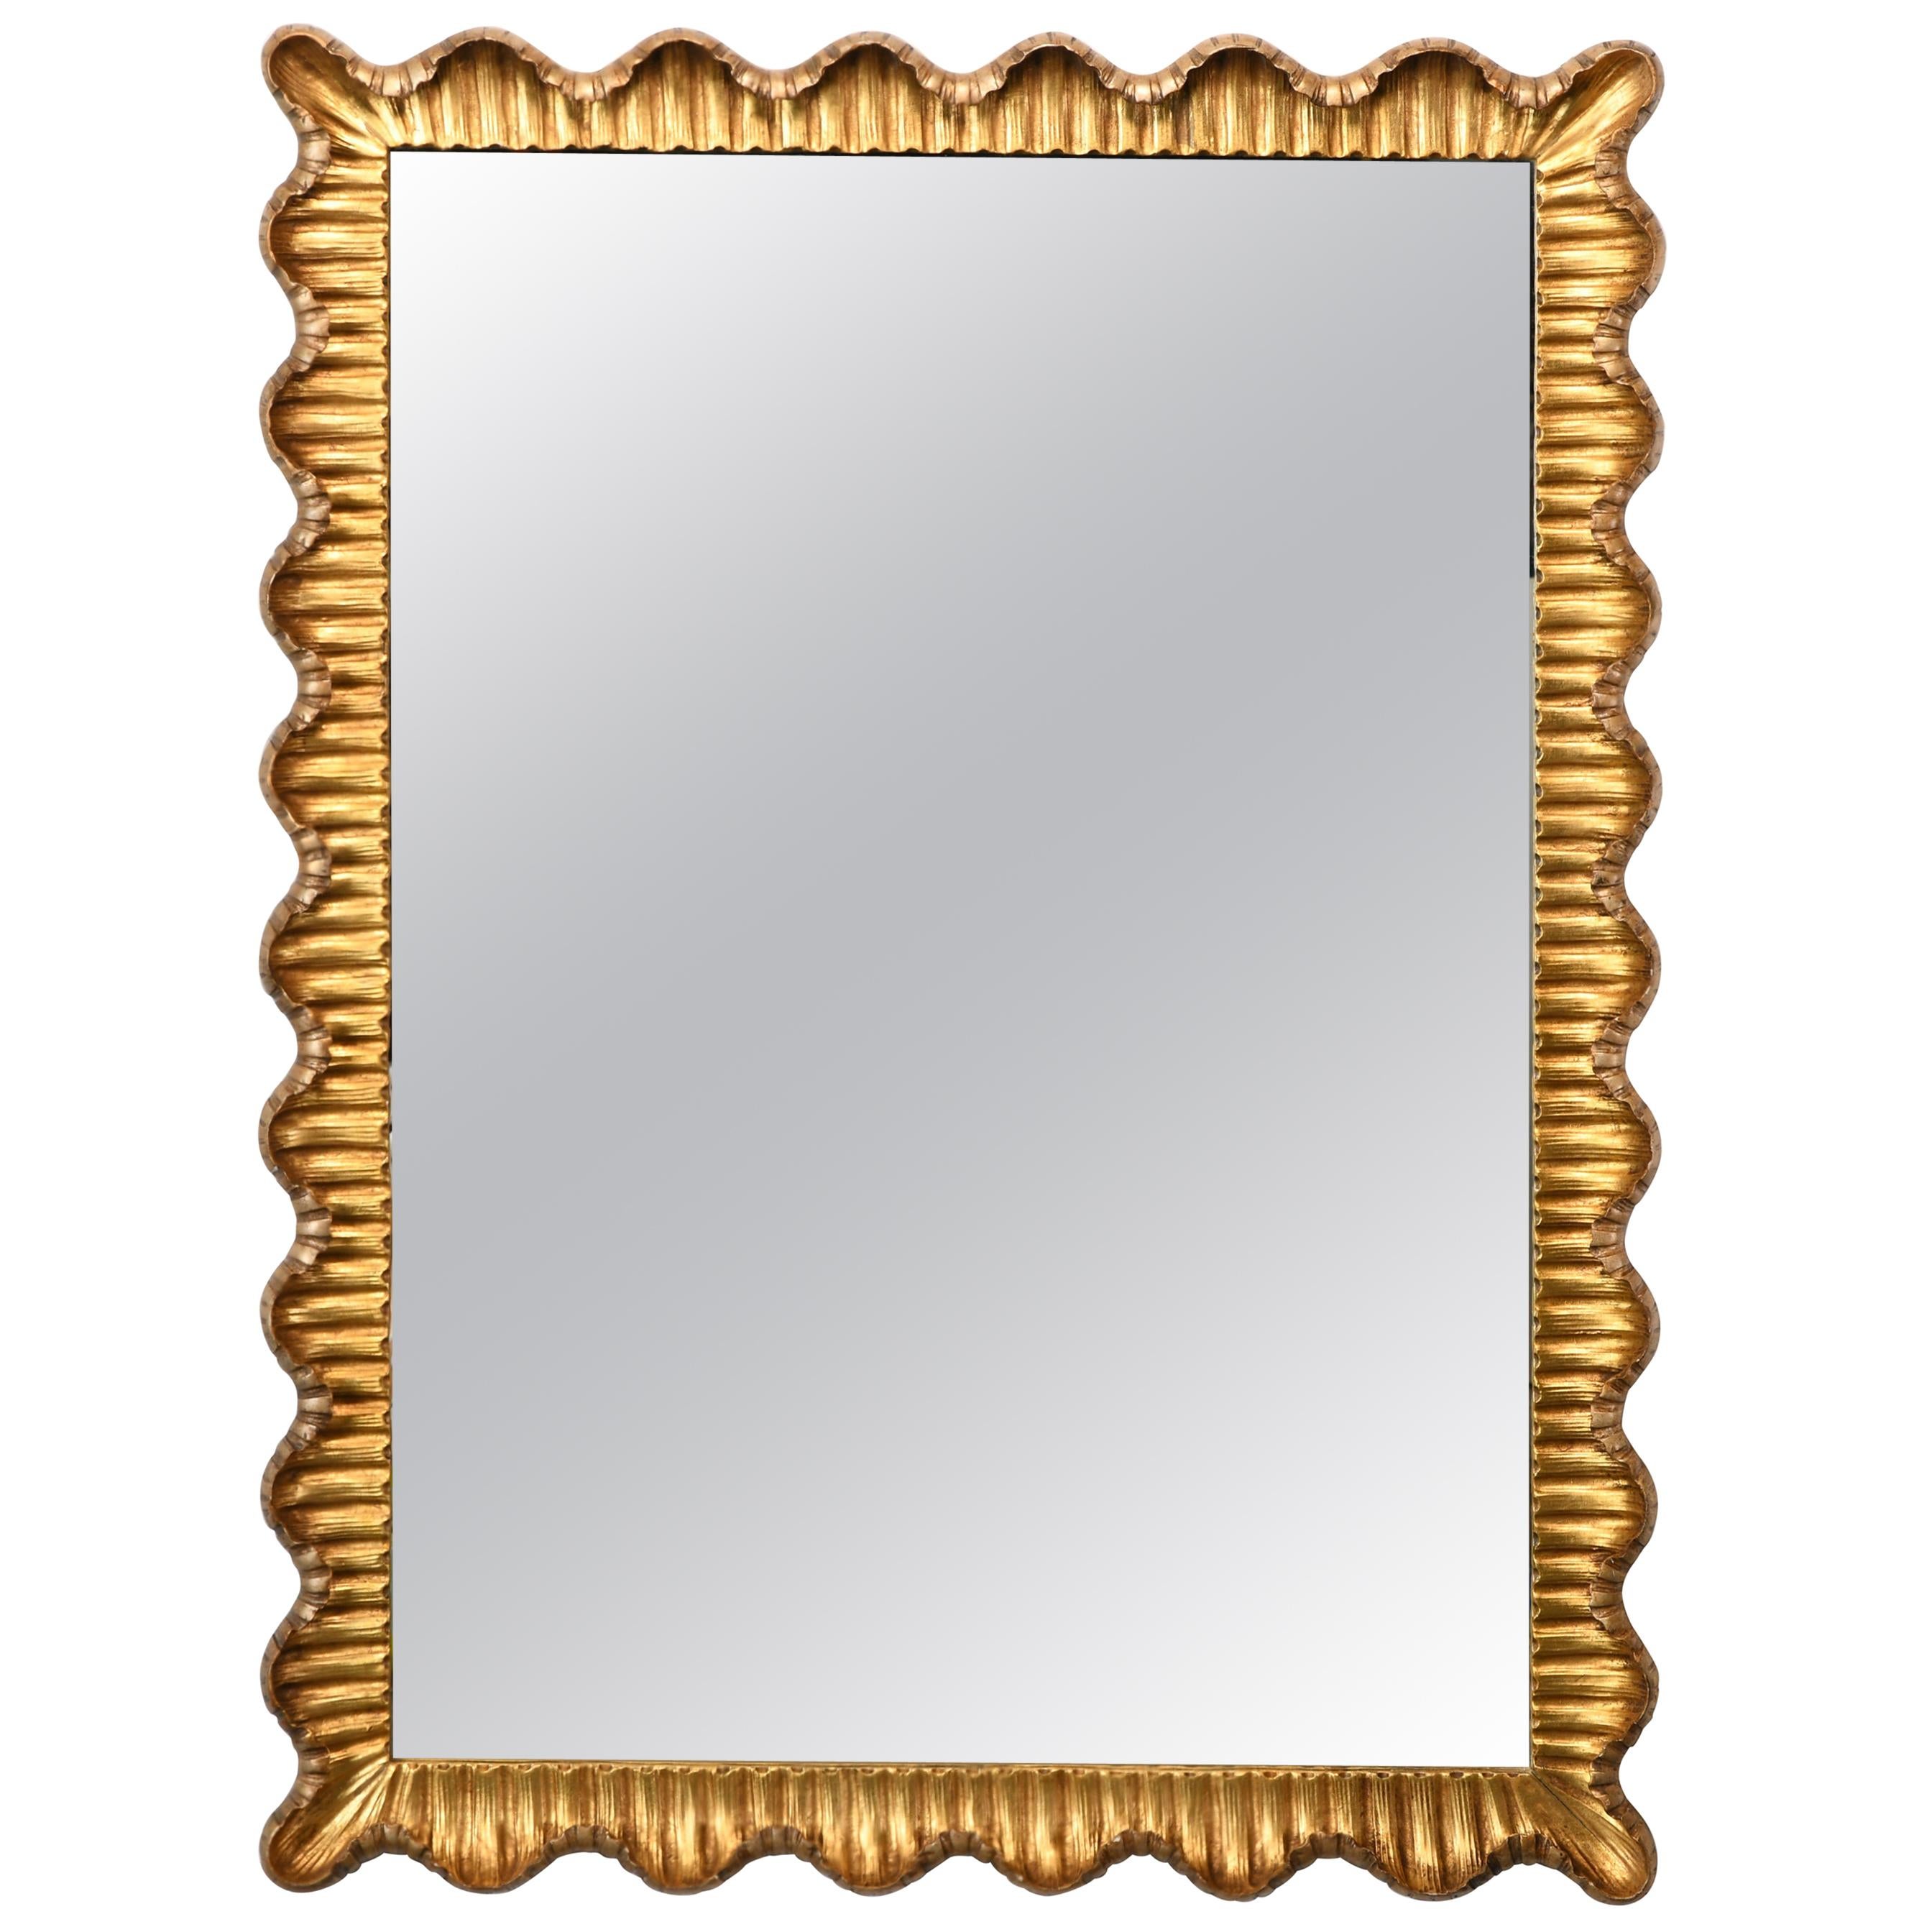 Danby Scalloped Italian Mirror, 1950s